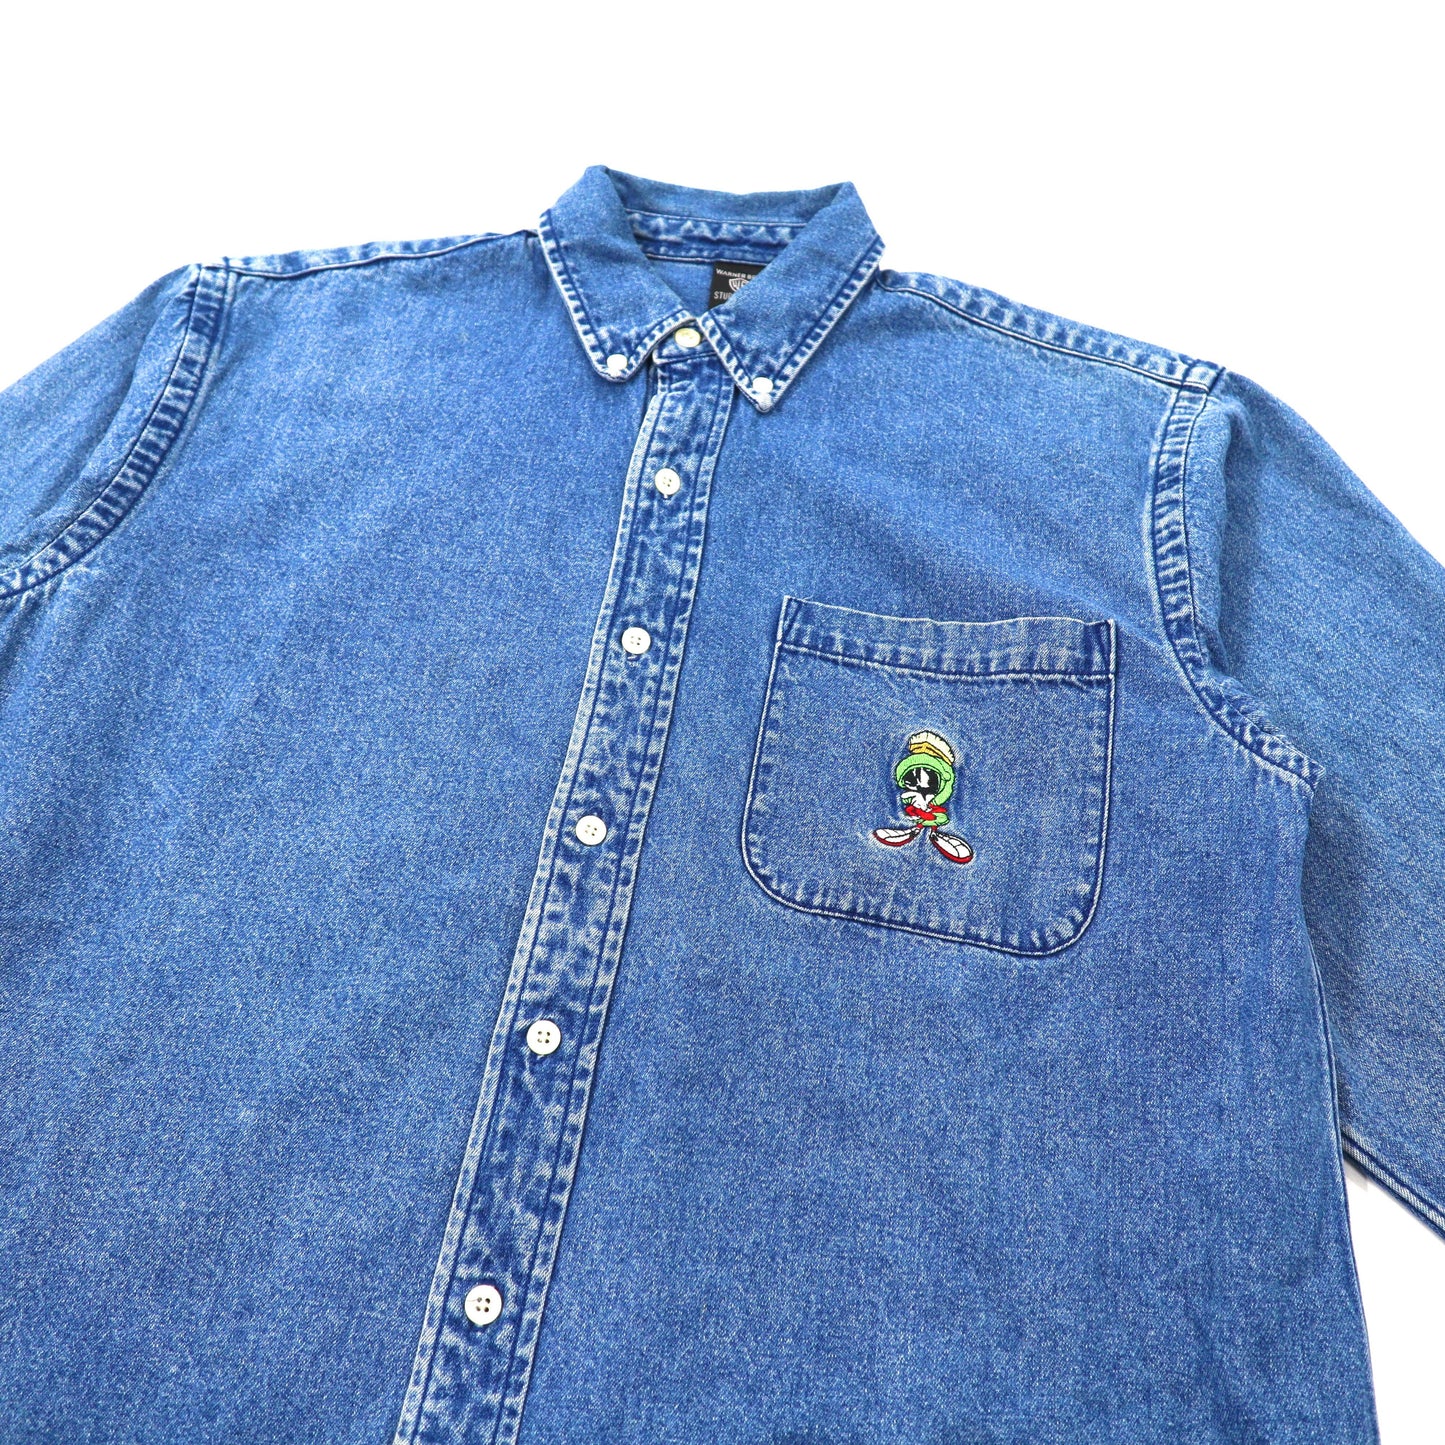 WARNER BROS. ボタンダウンシャツ S ブルー デニム LOONEY TUNES 刺繍 90年代